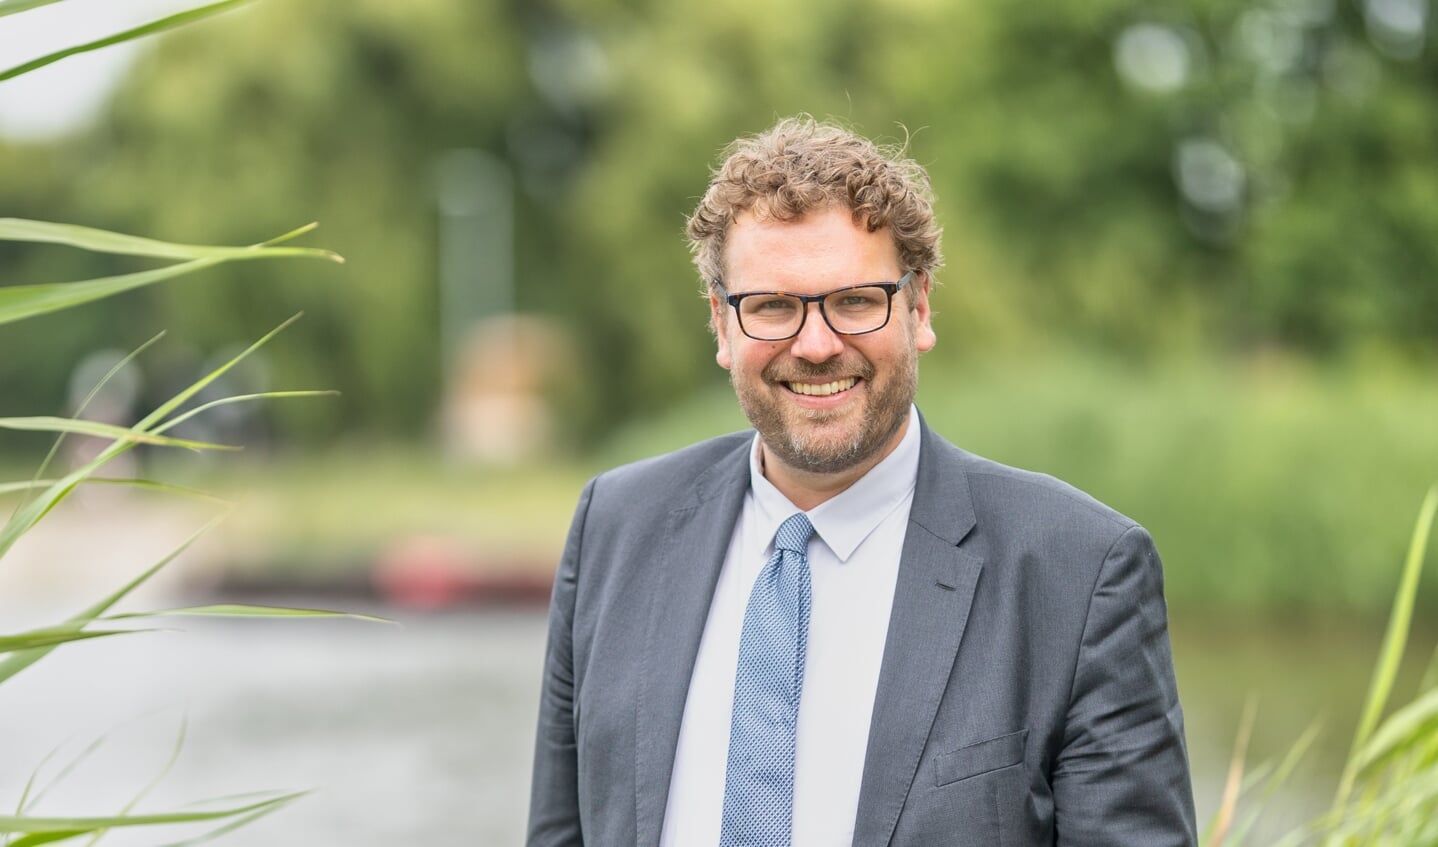 Maarten Poorter is de komende zes jaar uw burgemeester!